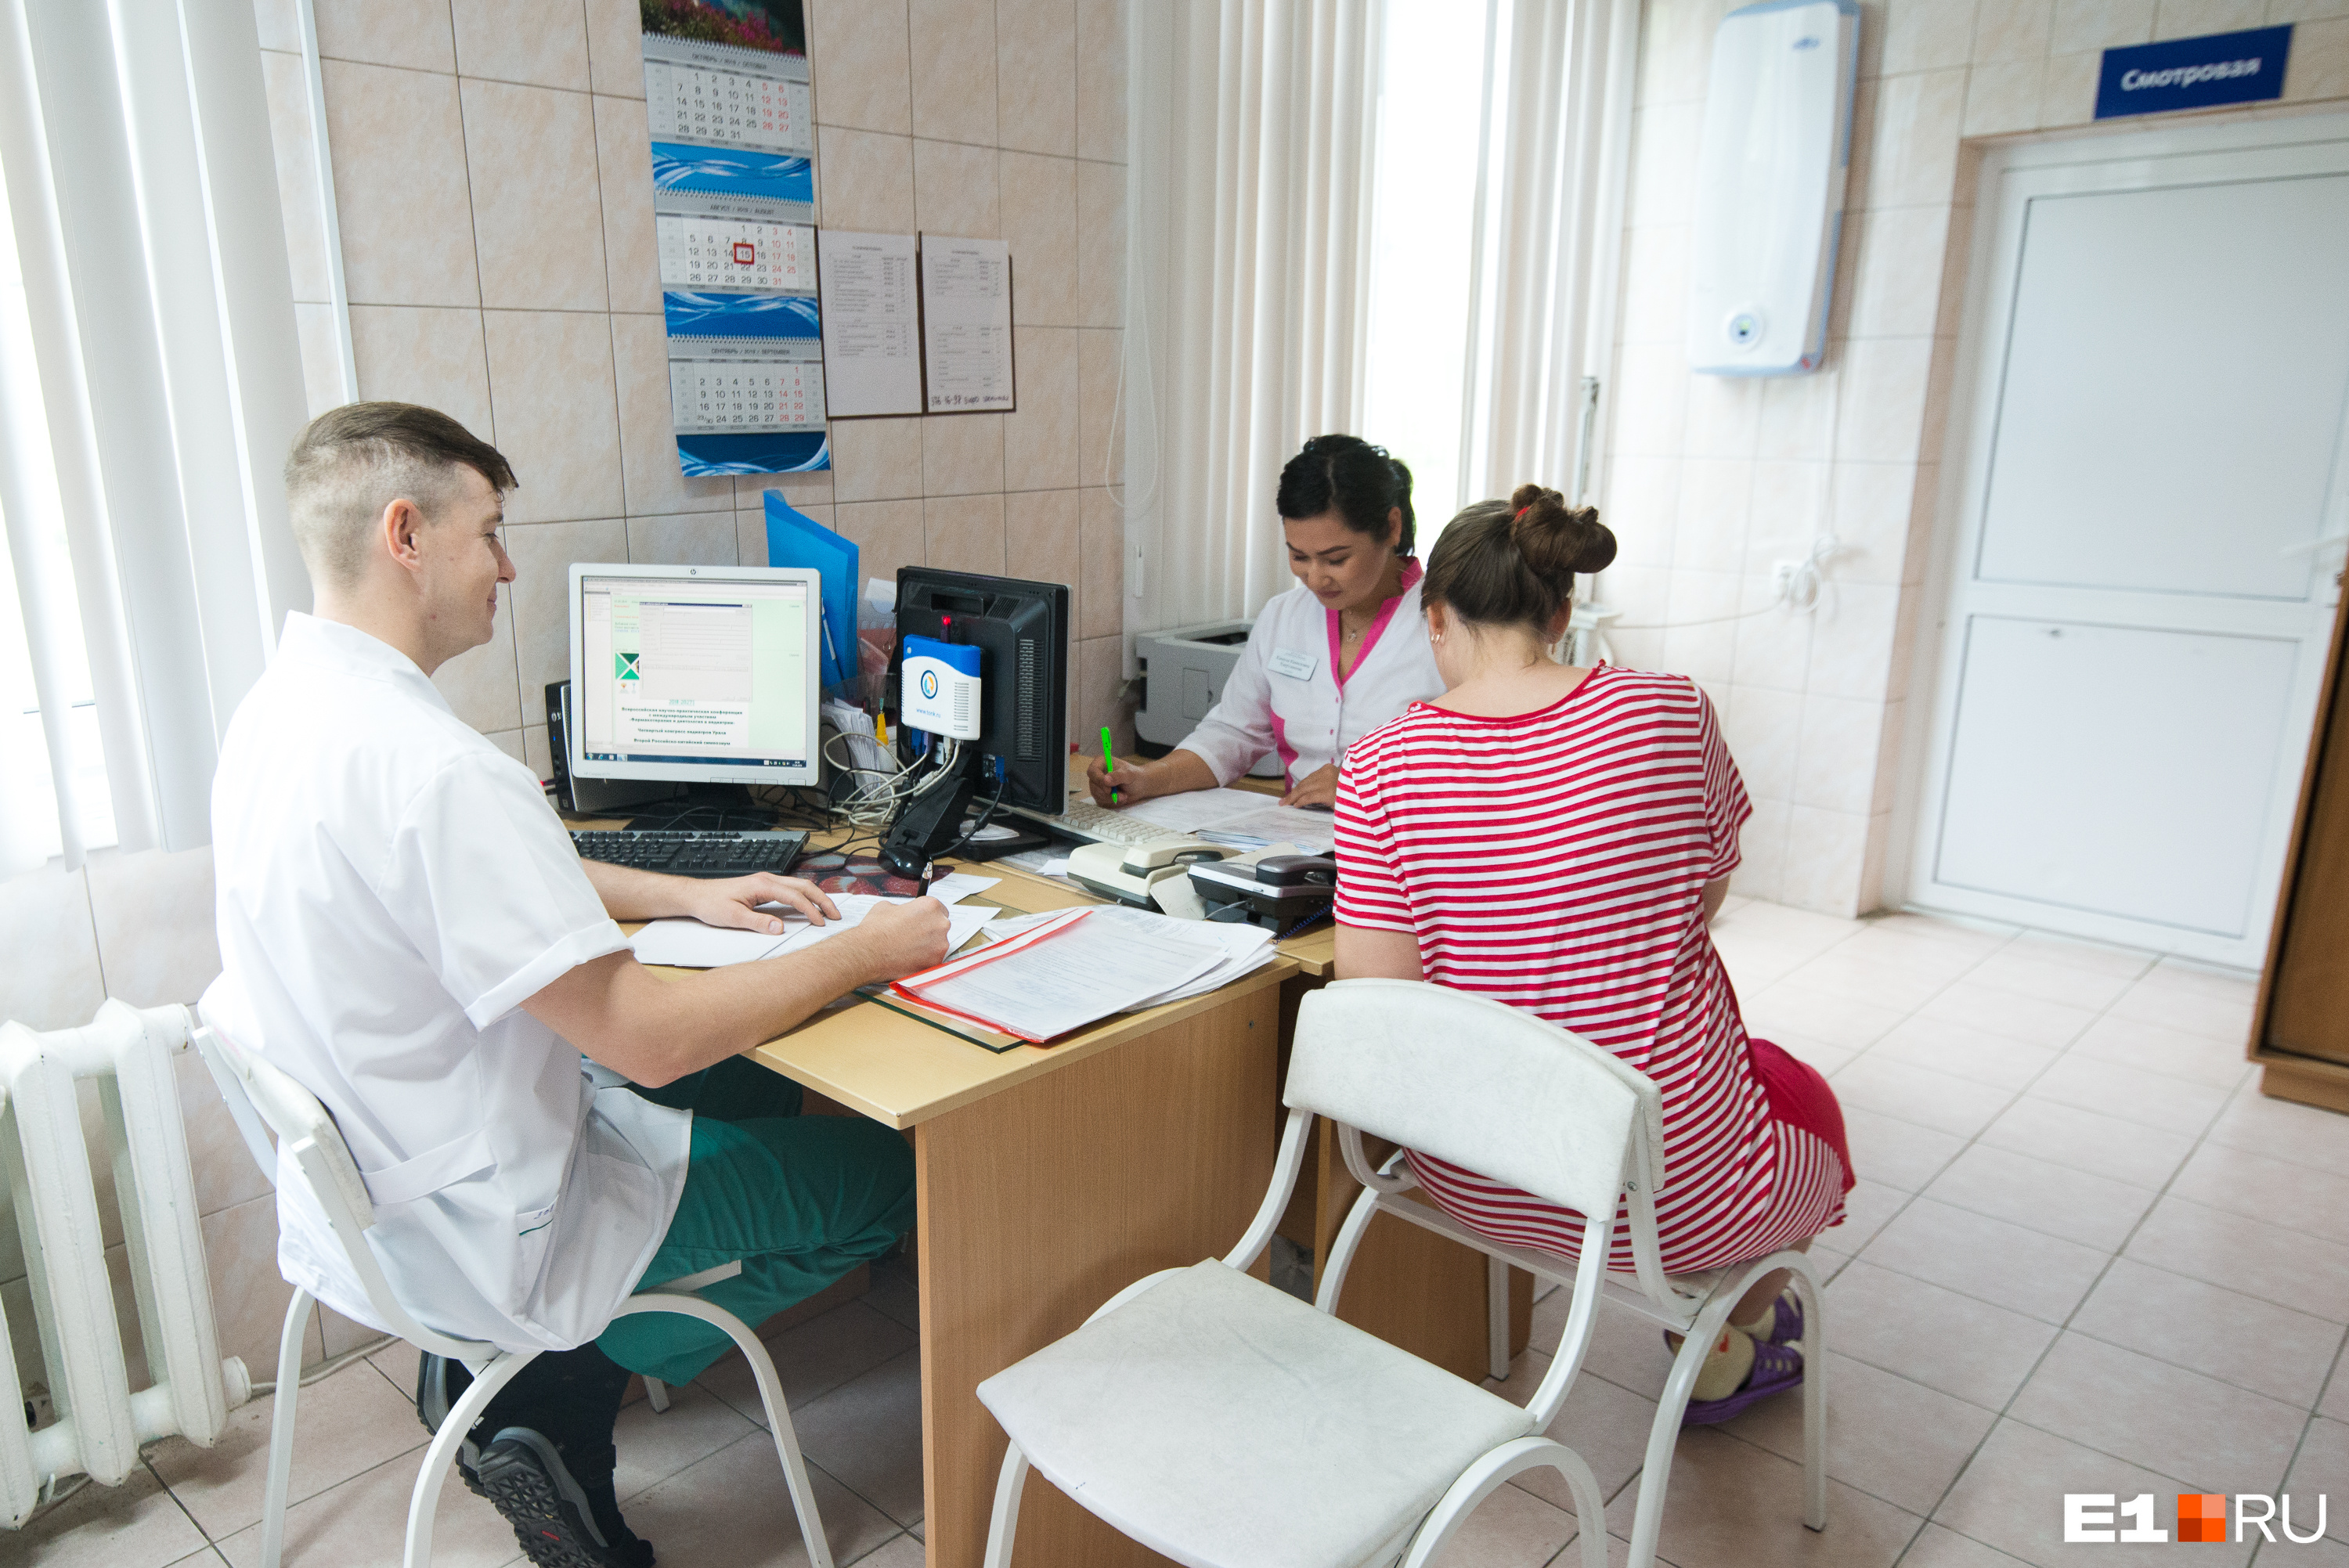 К амбулаторной службе больницы прикреплено более 81 тысячи женщин из нескольких районов Екатеринбурга